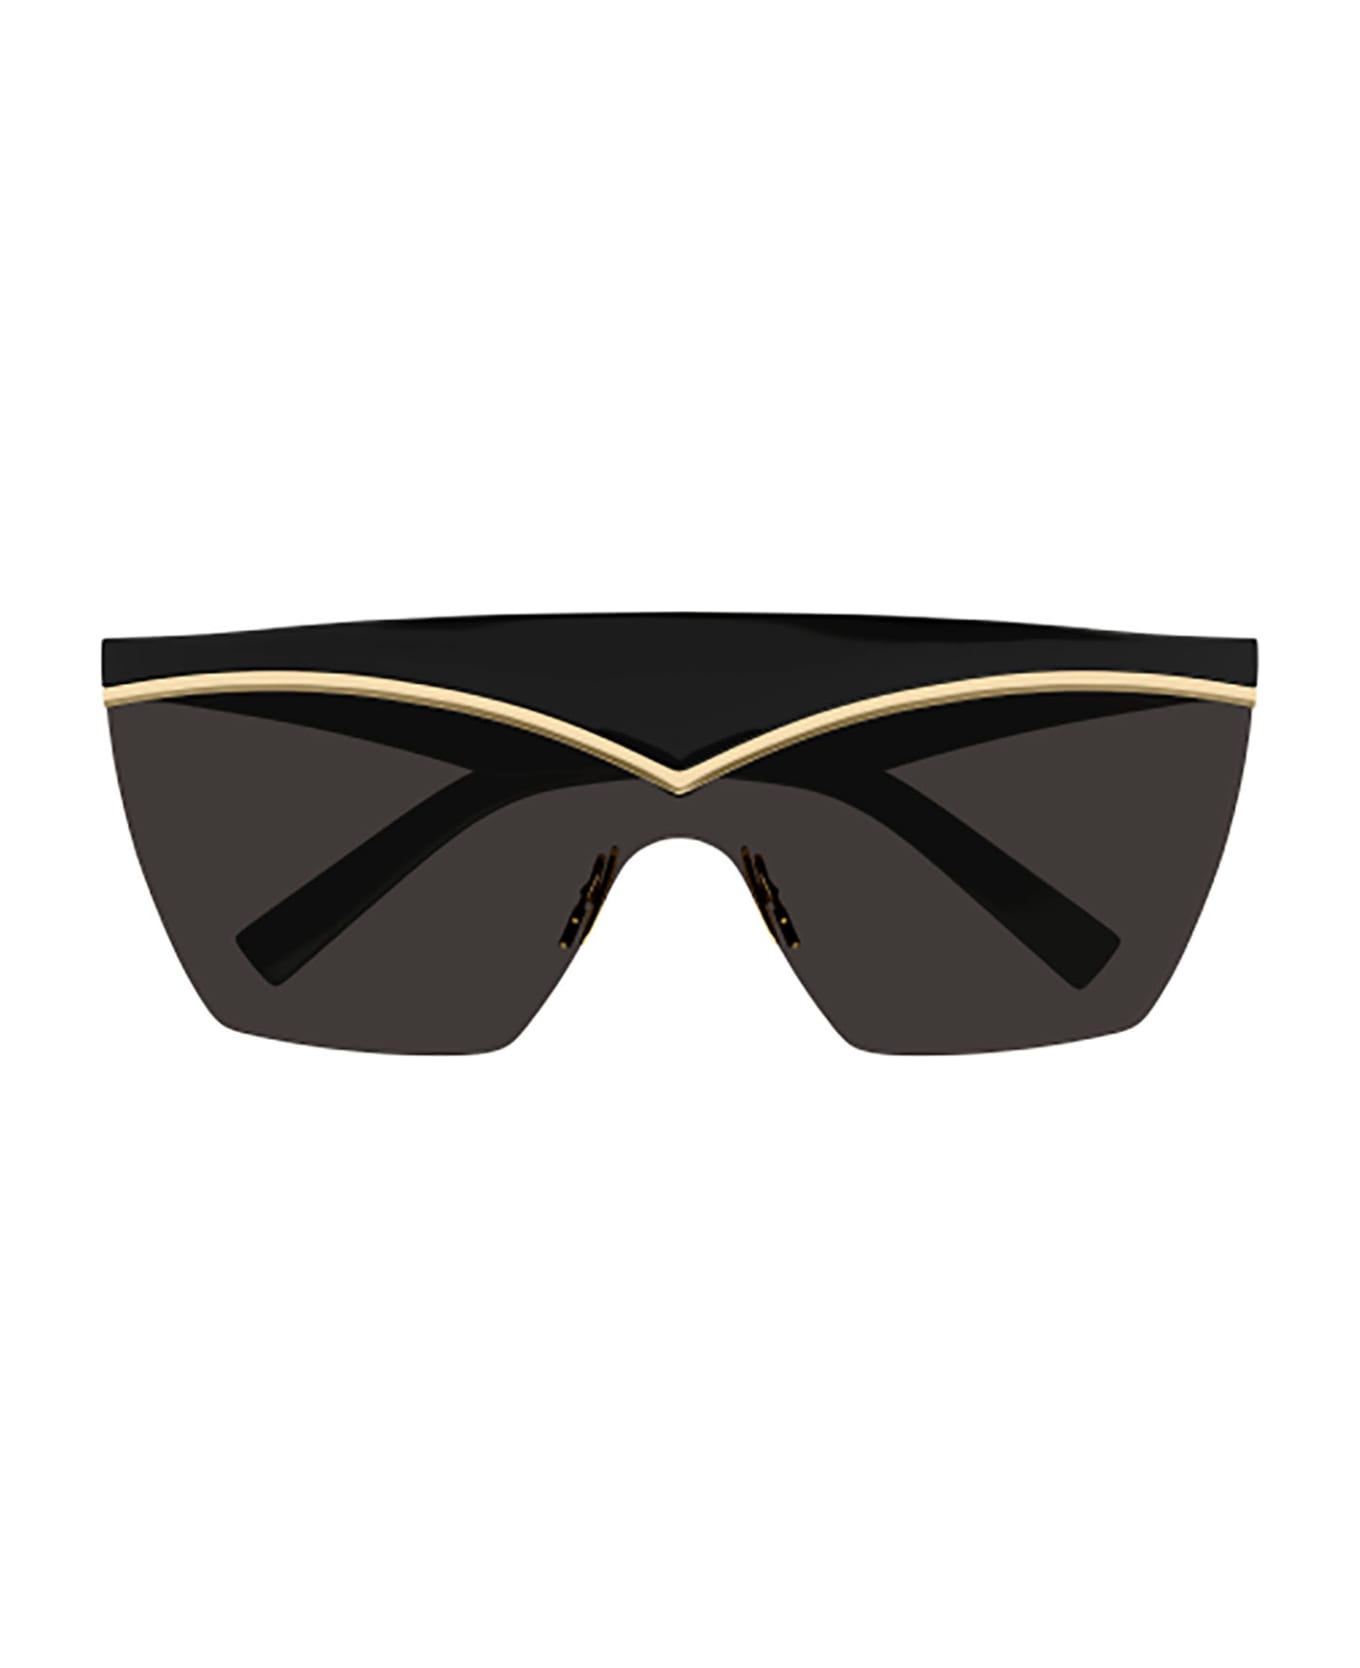 Saint Laurent Eyewear SL 614 MASK Sunglasses - Black Black Black サングラス